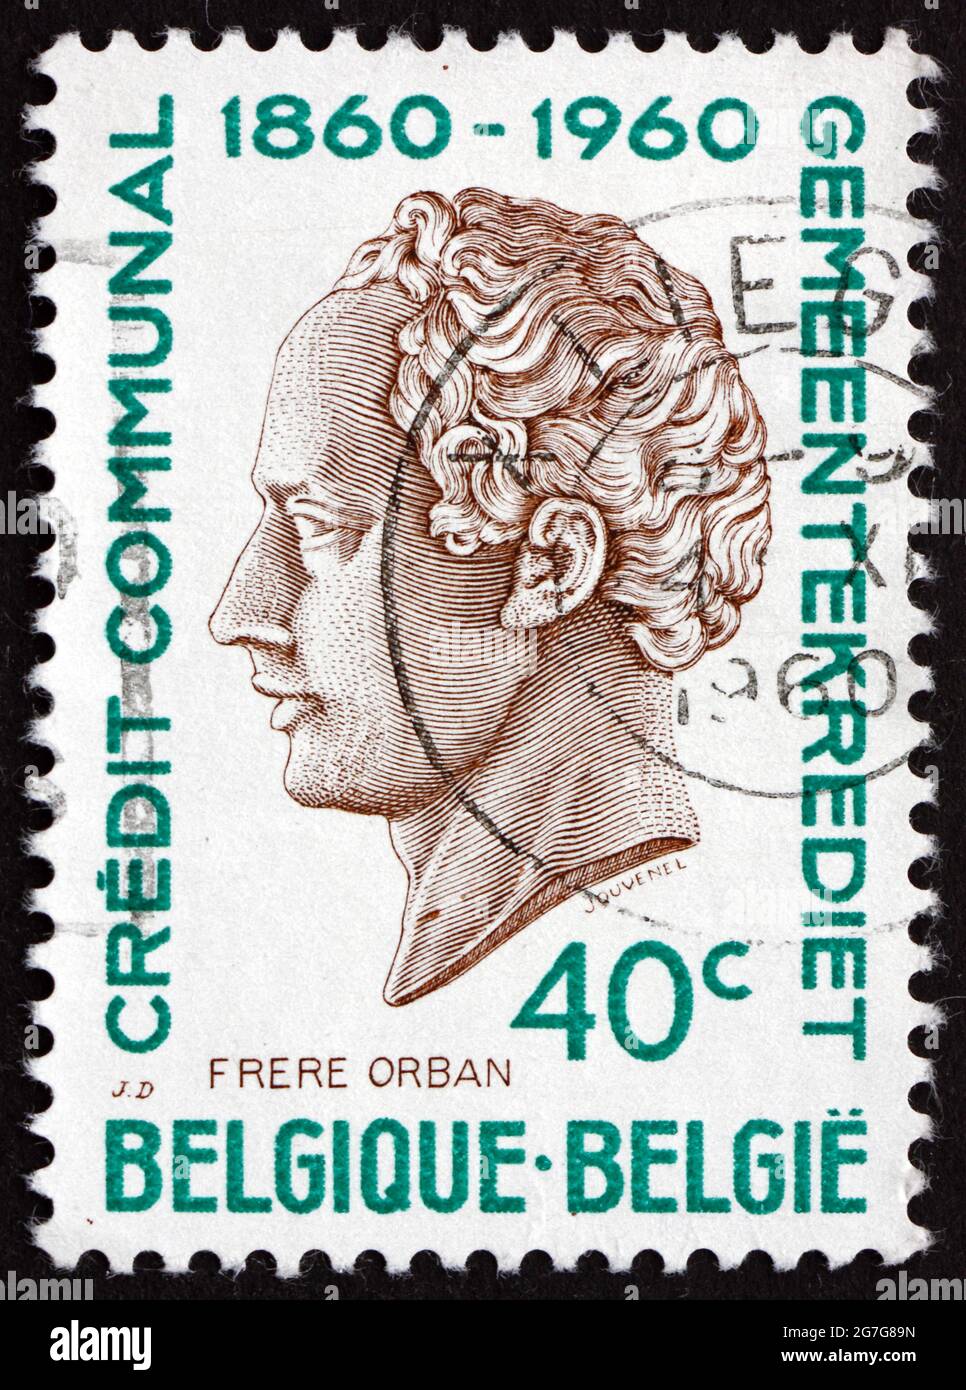 BELGIQUE - VERS 1960 : un timbre imprimé en Belgique montre H. J. W. Frere-Orban, Portrait, était un homme politique et un homme d'État libéral belge, vers 1960 Banque D'Images